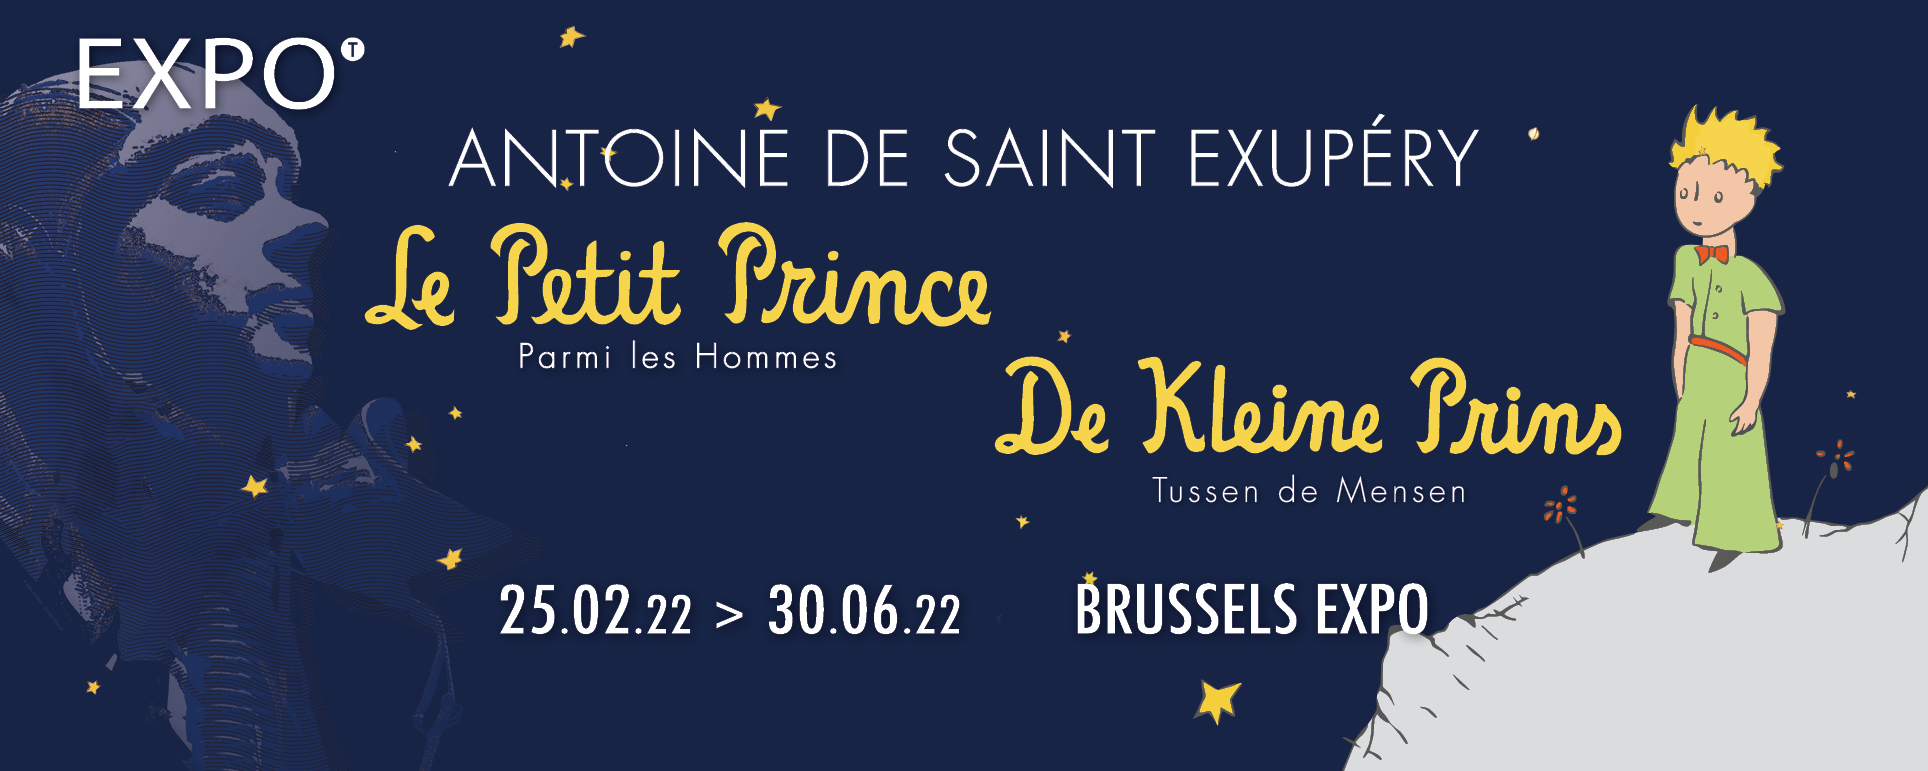 Exposition « Antoine de Saint Exupéry. Le Petit Prince parmi les Hommes. » à Bruxelles